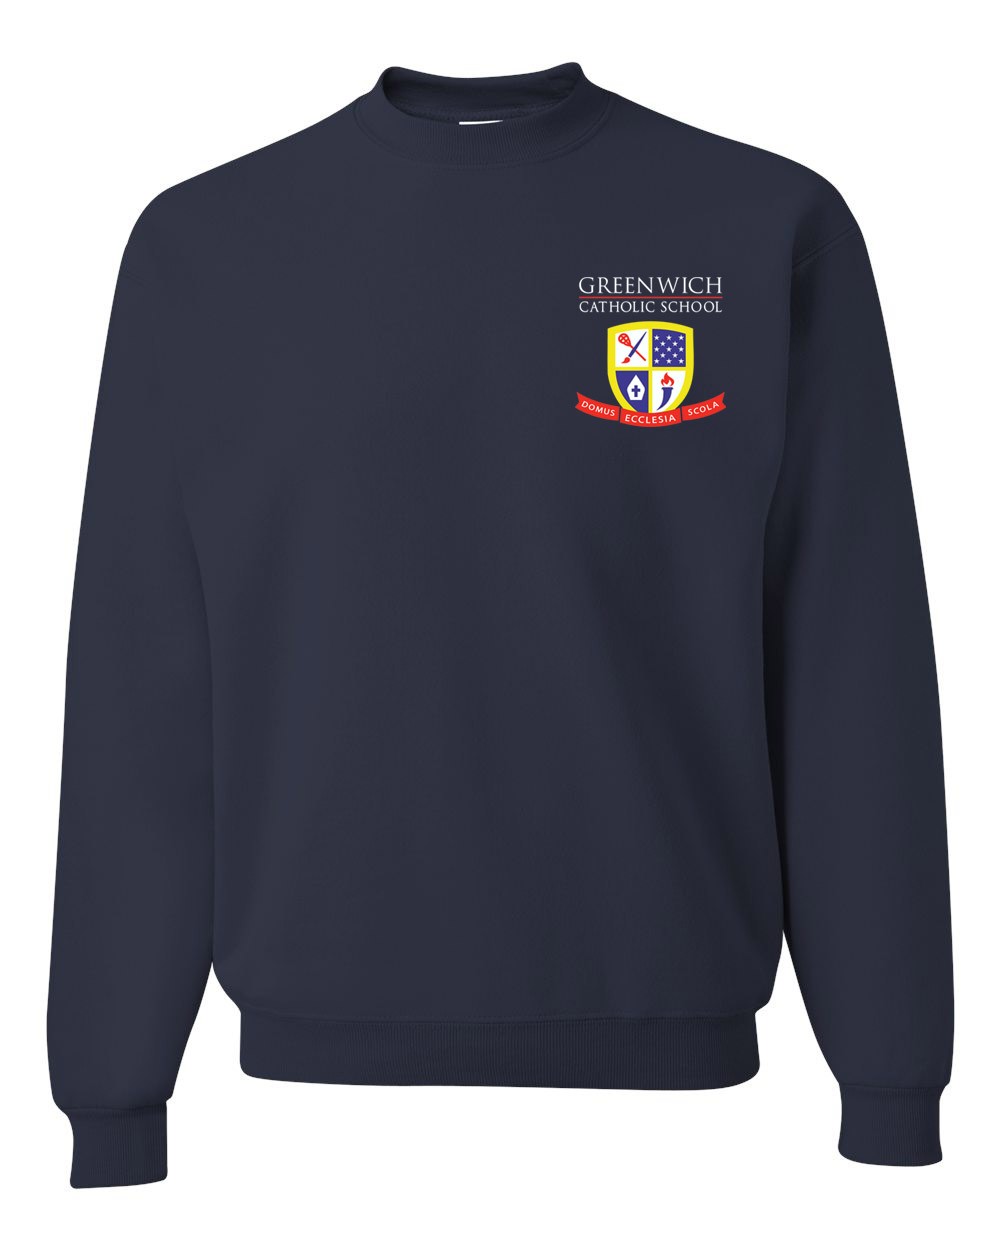 GCS Gym Sweatshirt w/ School Logo